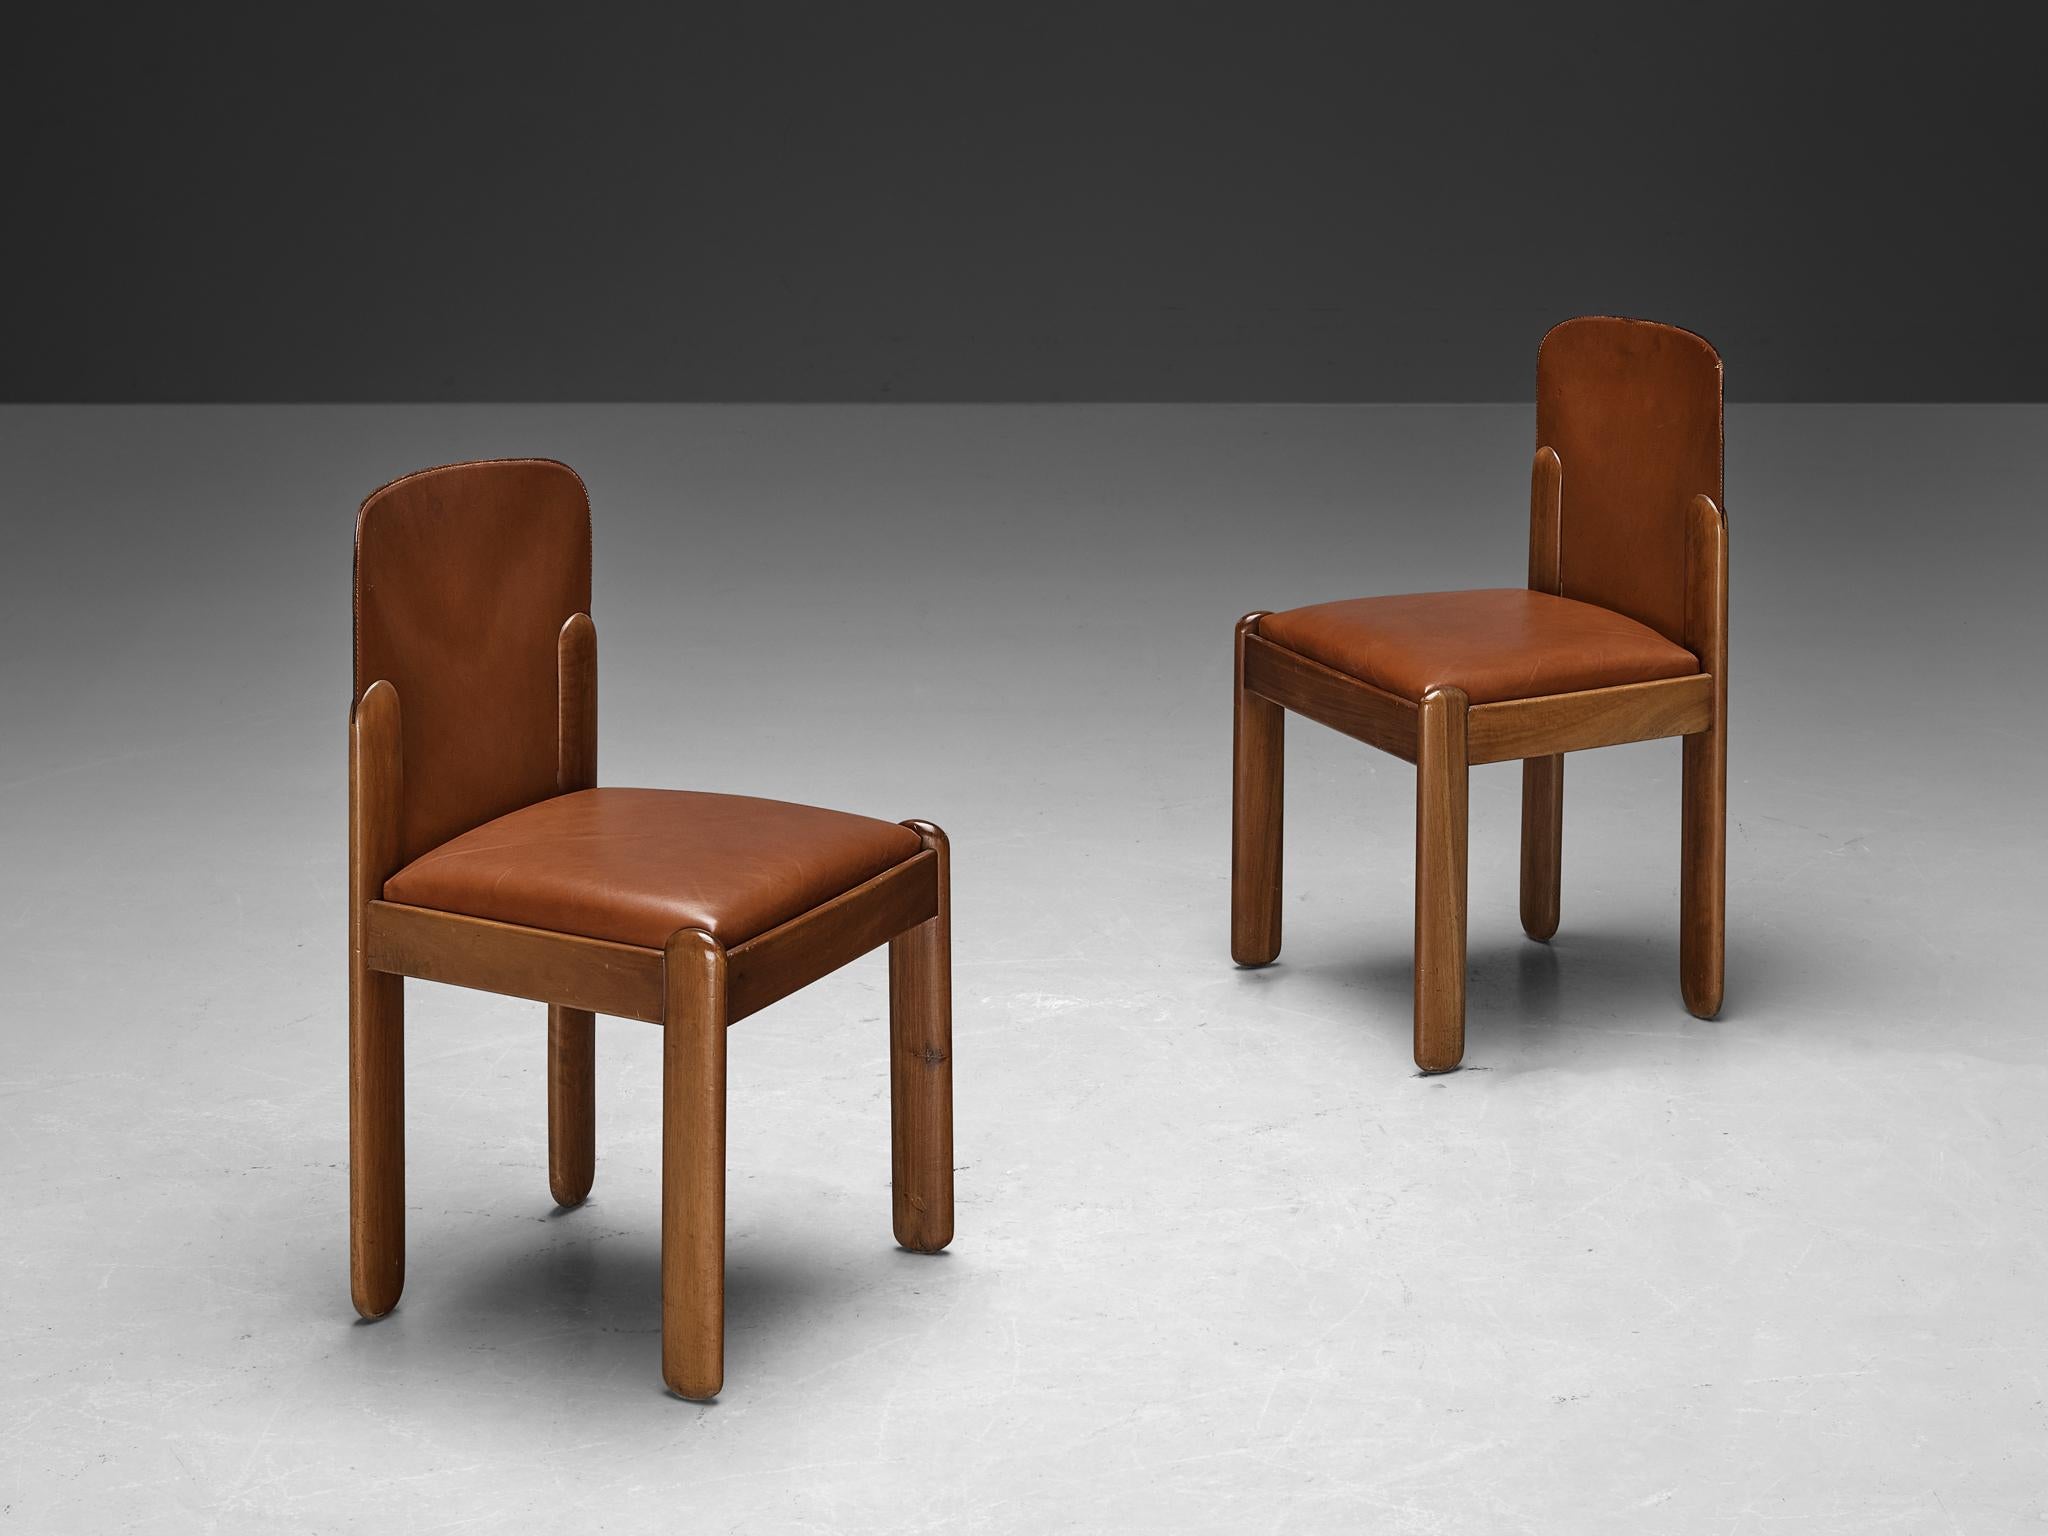 Silvio Coppola pour Bernini, paire de chaises de salle à manger, modèle '330', cuir brun cognac, noyer, Italie, 1969

Magnifique duo de chaises de salle à manger en cuir cognac et bois de noyer par le designer italien Silvio Coppola. Ces chaises